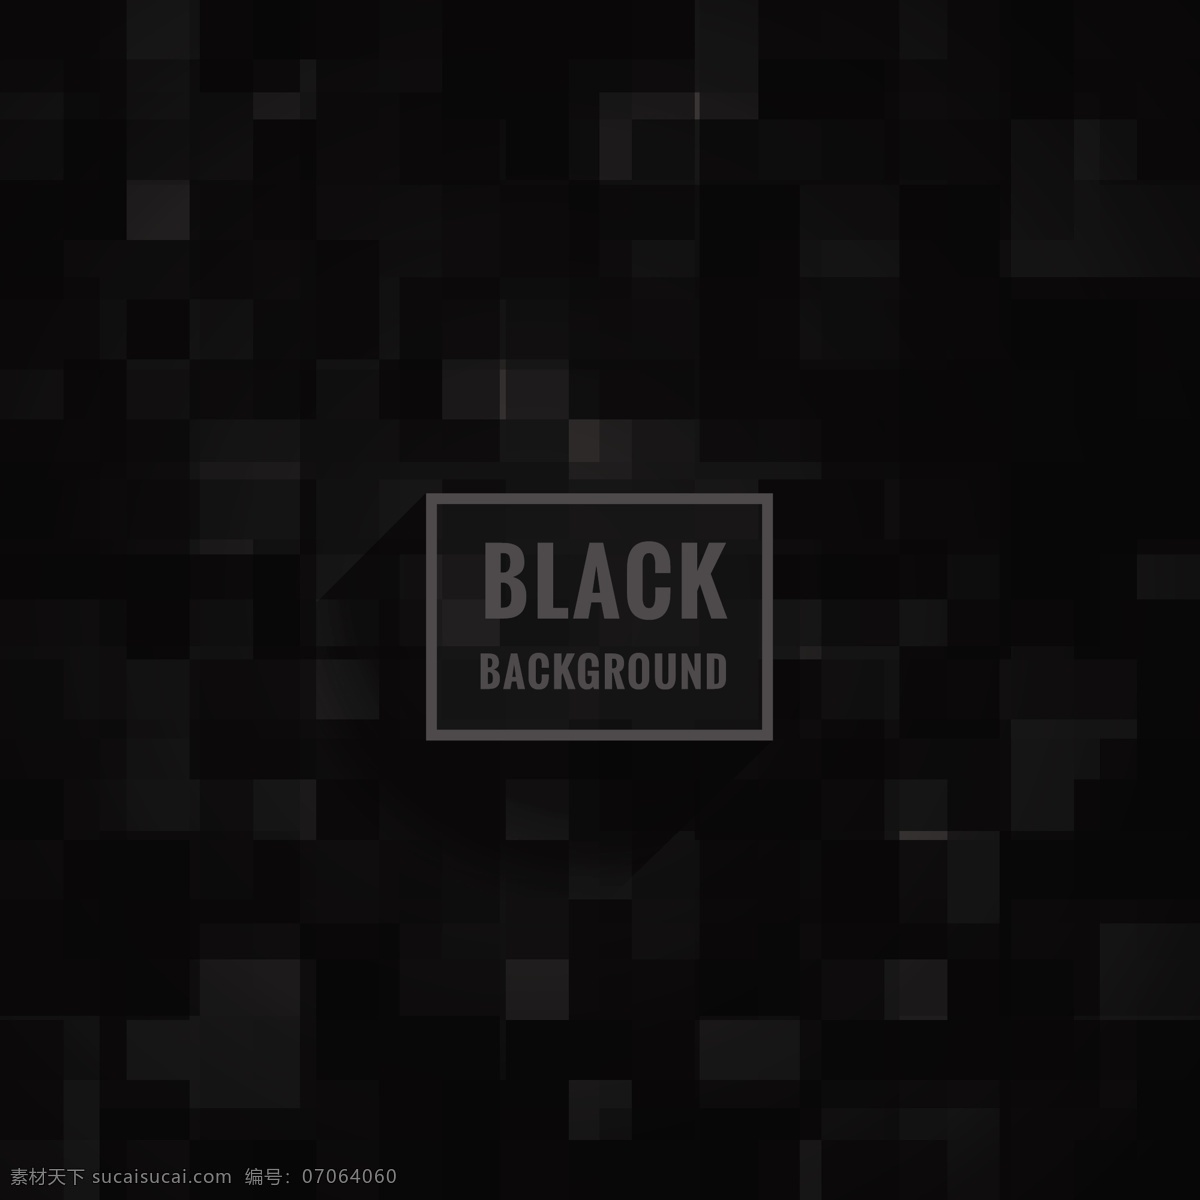 黑色 背景 图案 抽象 壁纸 黑色背景 镶嵌 像素 正方形 暗 暗背景 背景黑色